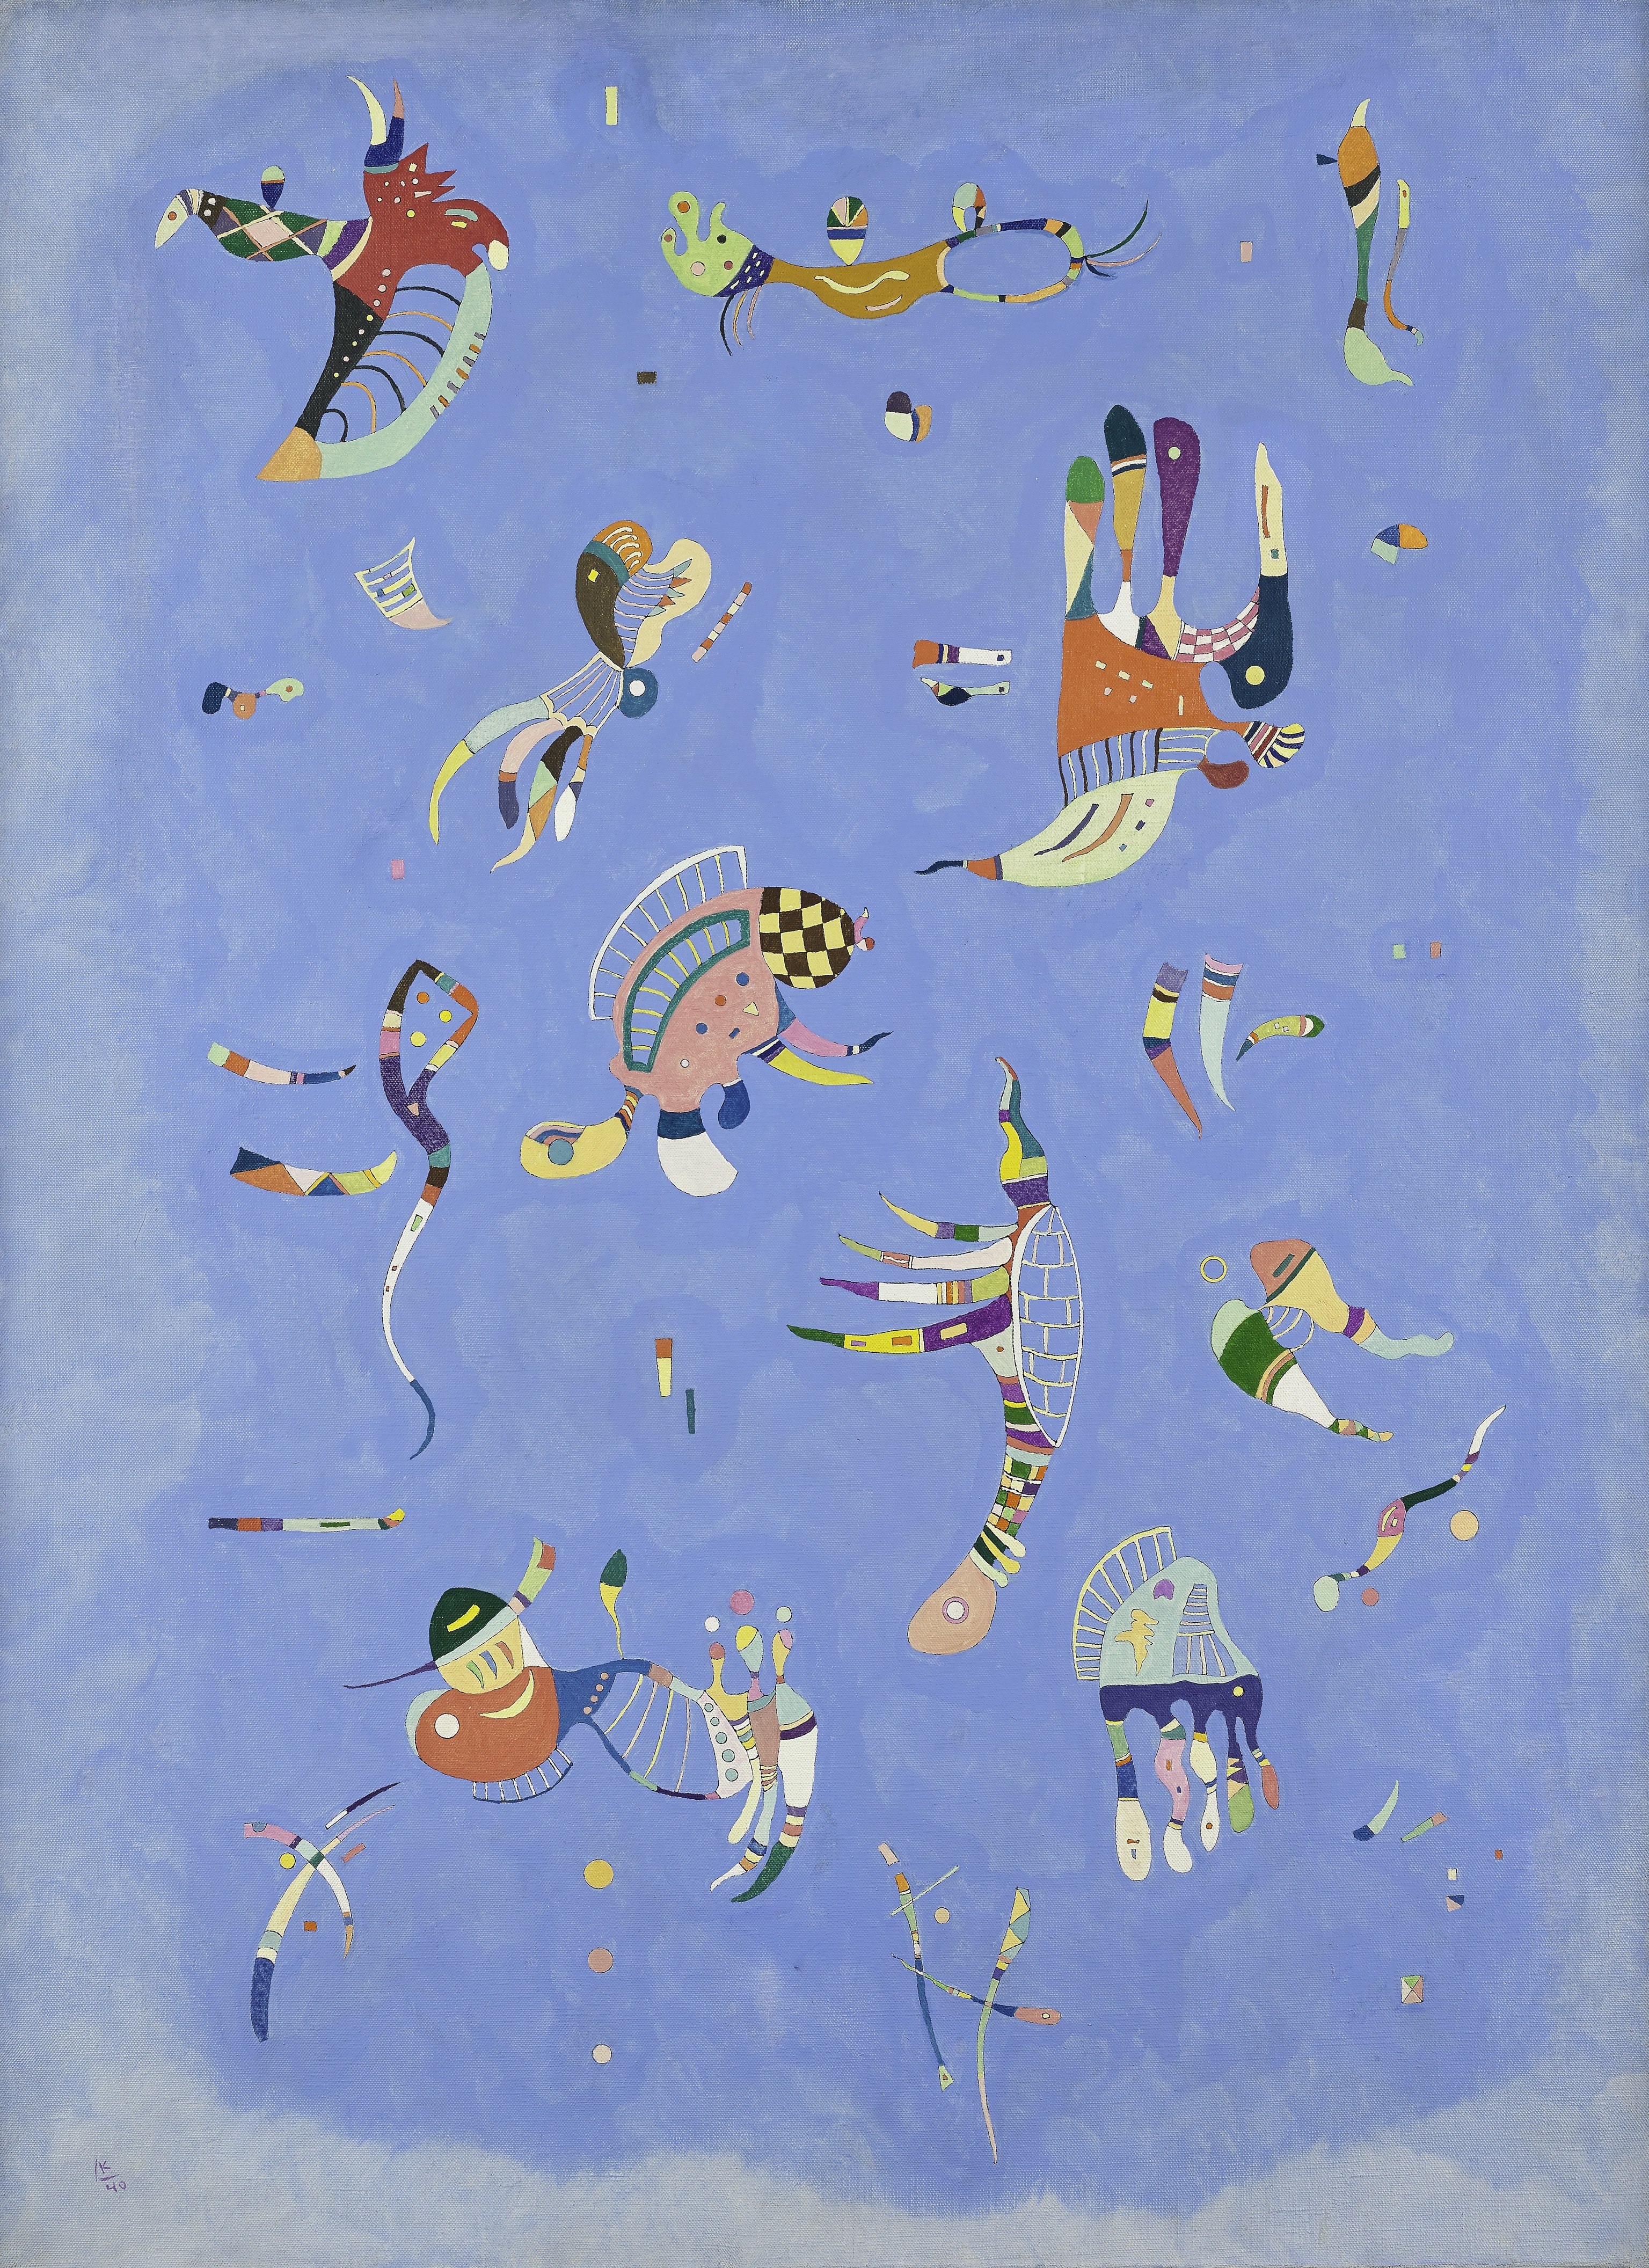 'Bleu de ciel' [Cielo azul] de Wassily Kandinsky (1940).